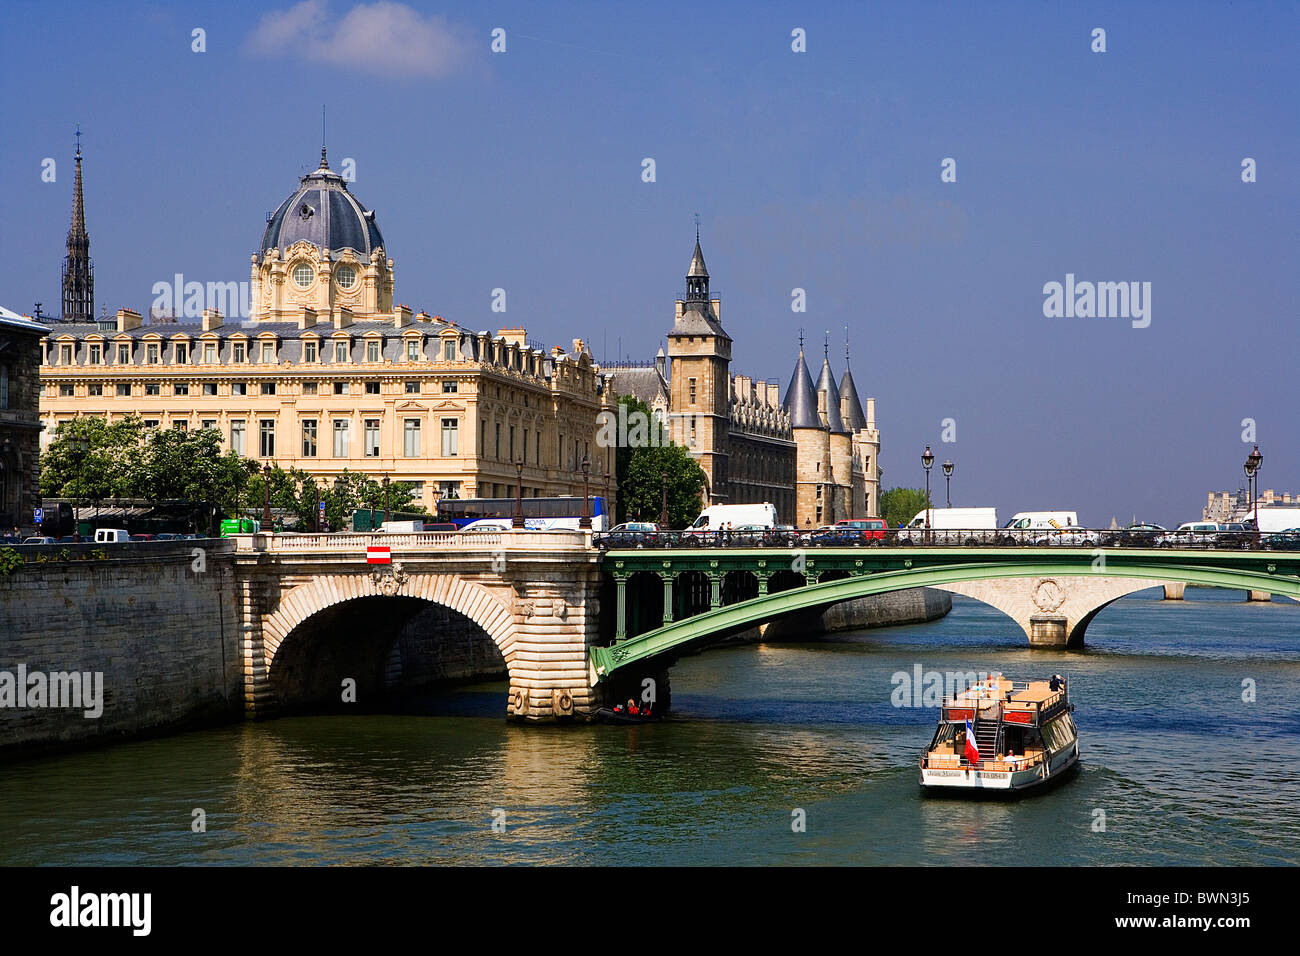 France Europe Paris city Ile de la Cite Palais de Justice Conciergerie Pont au Change River Seine Boat bridg Stock Photo